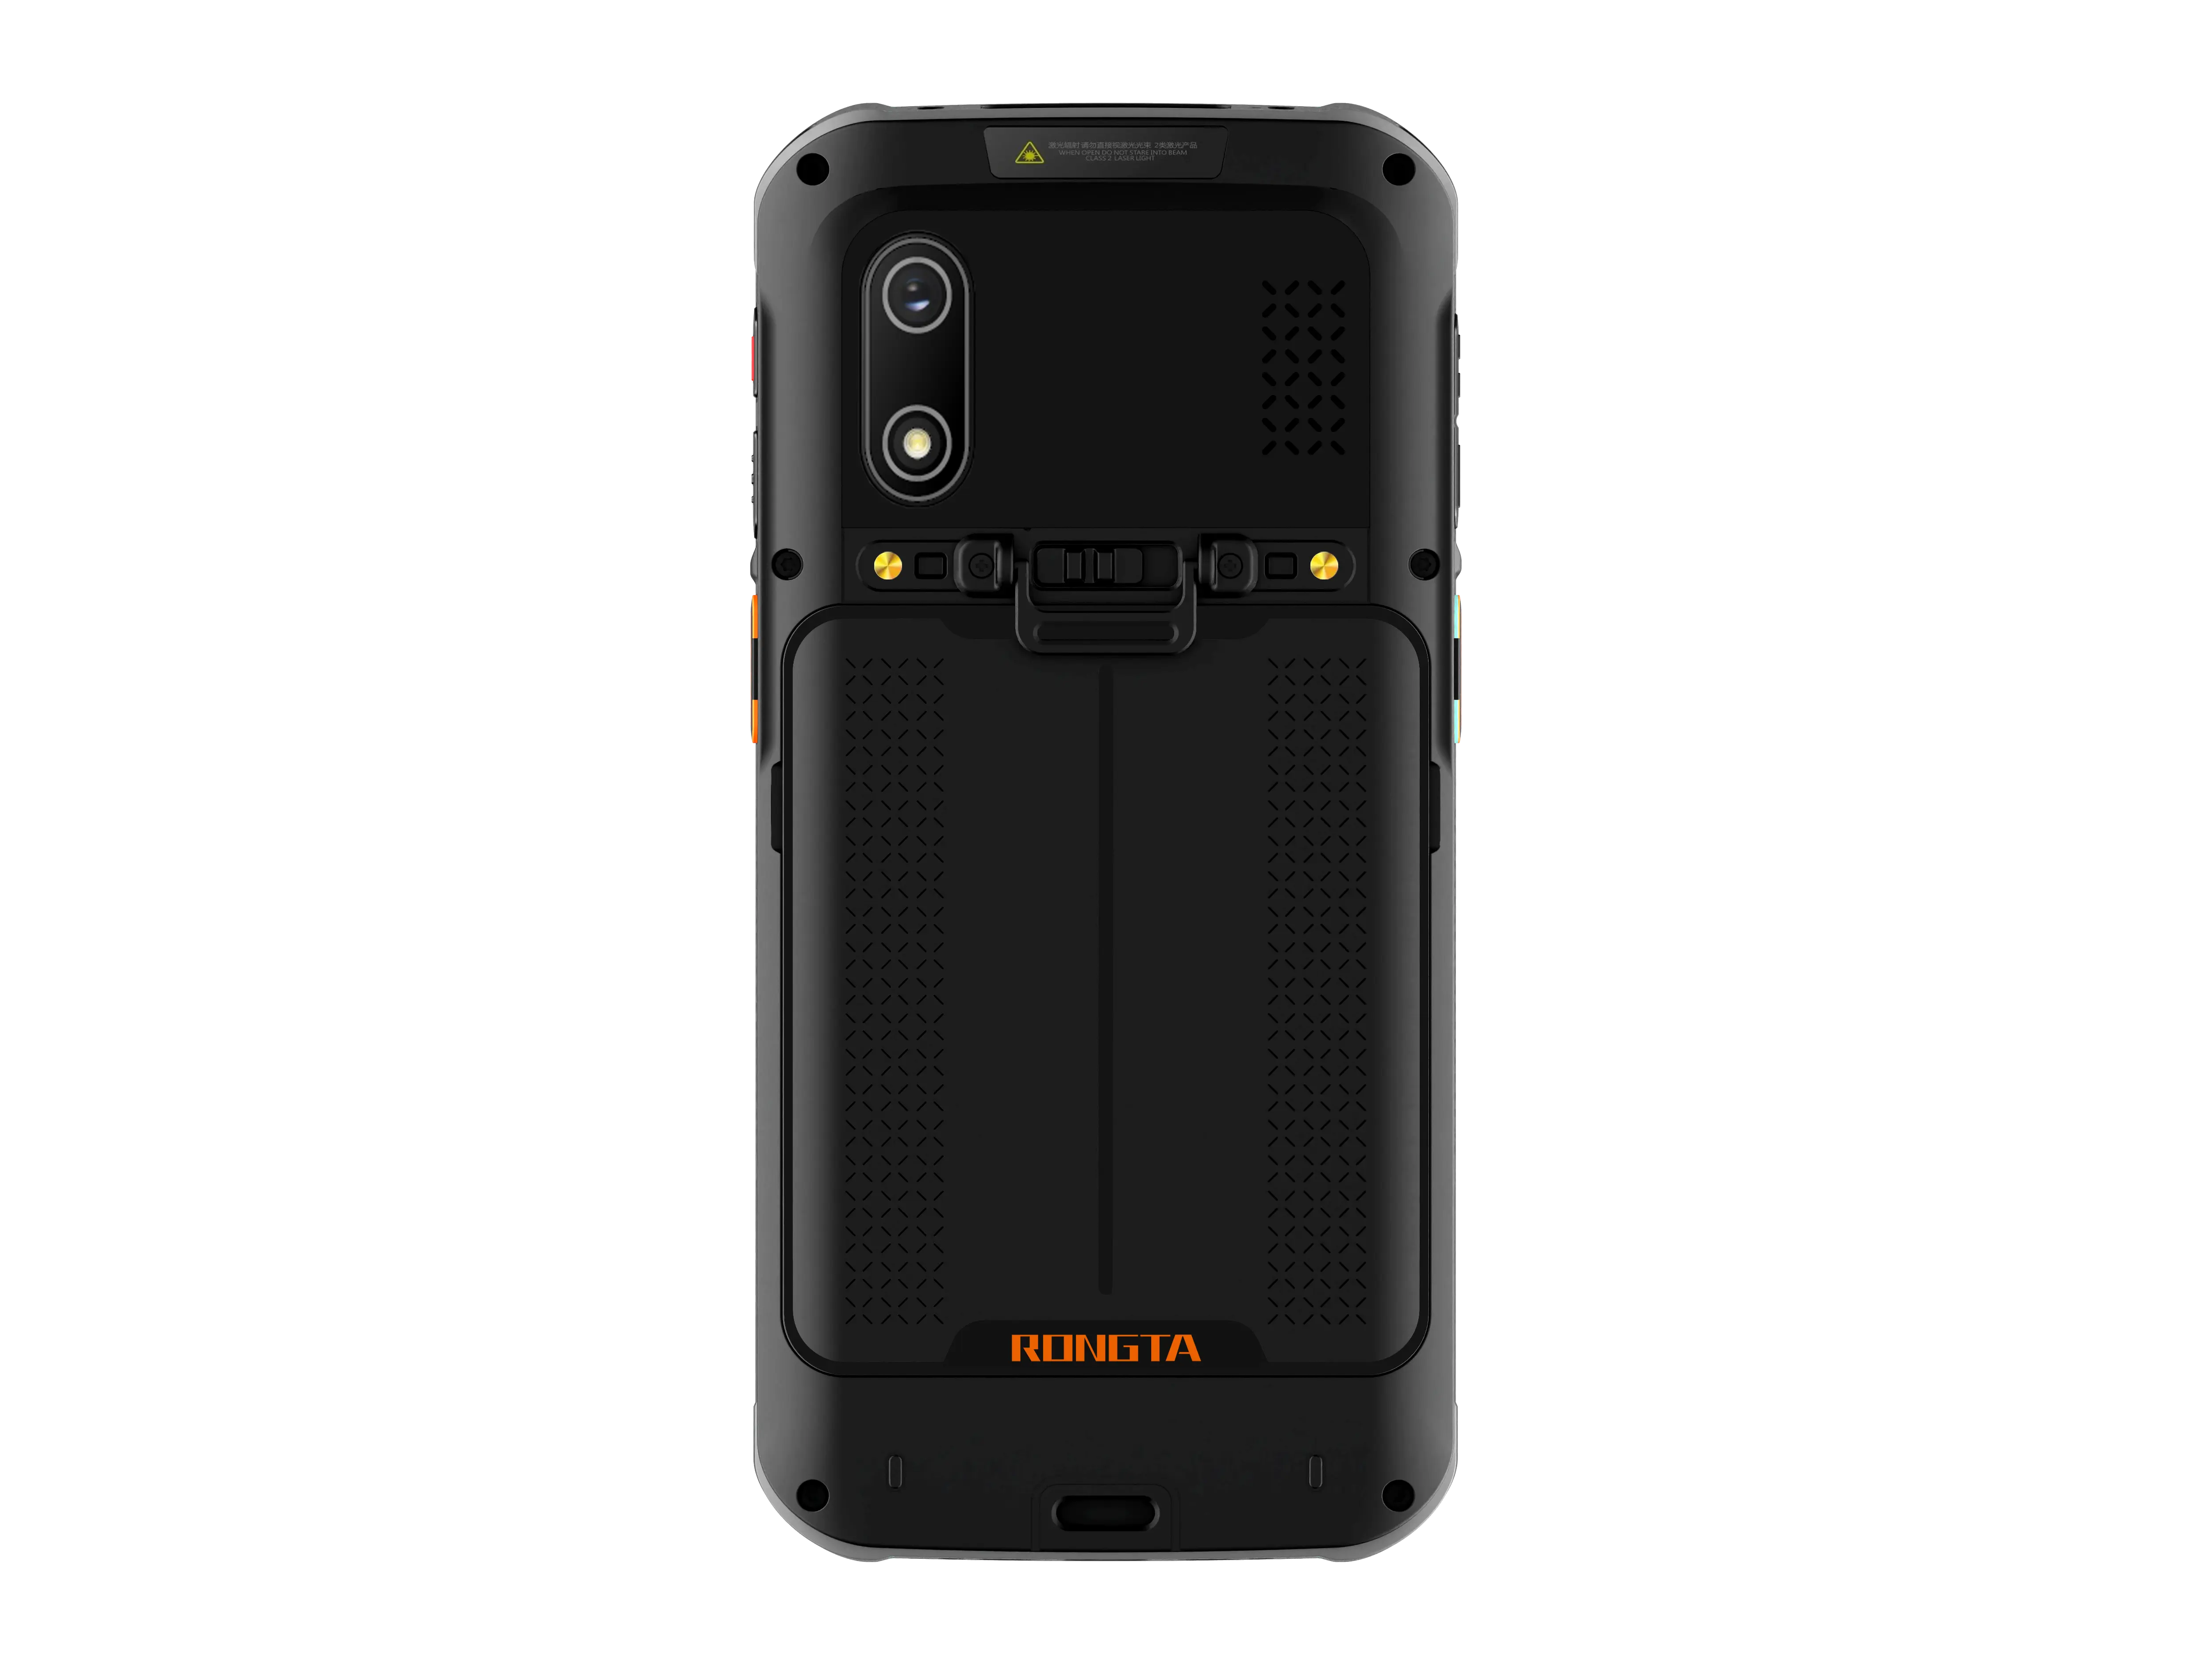 Barato alta protección 5,5 pulgadas 1D 2D Android Terminal de mano Android Pdas escáner de código de barras inteligente PDA